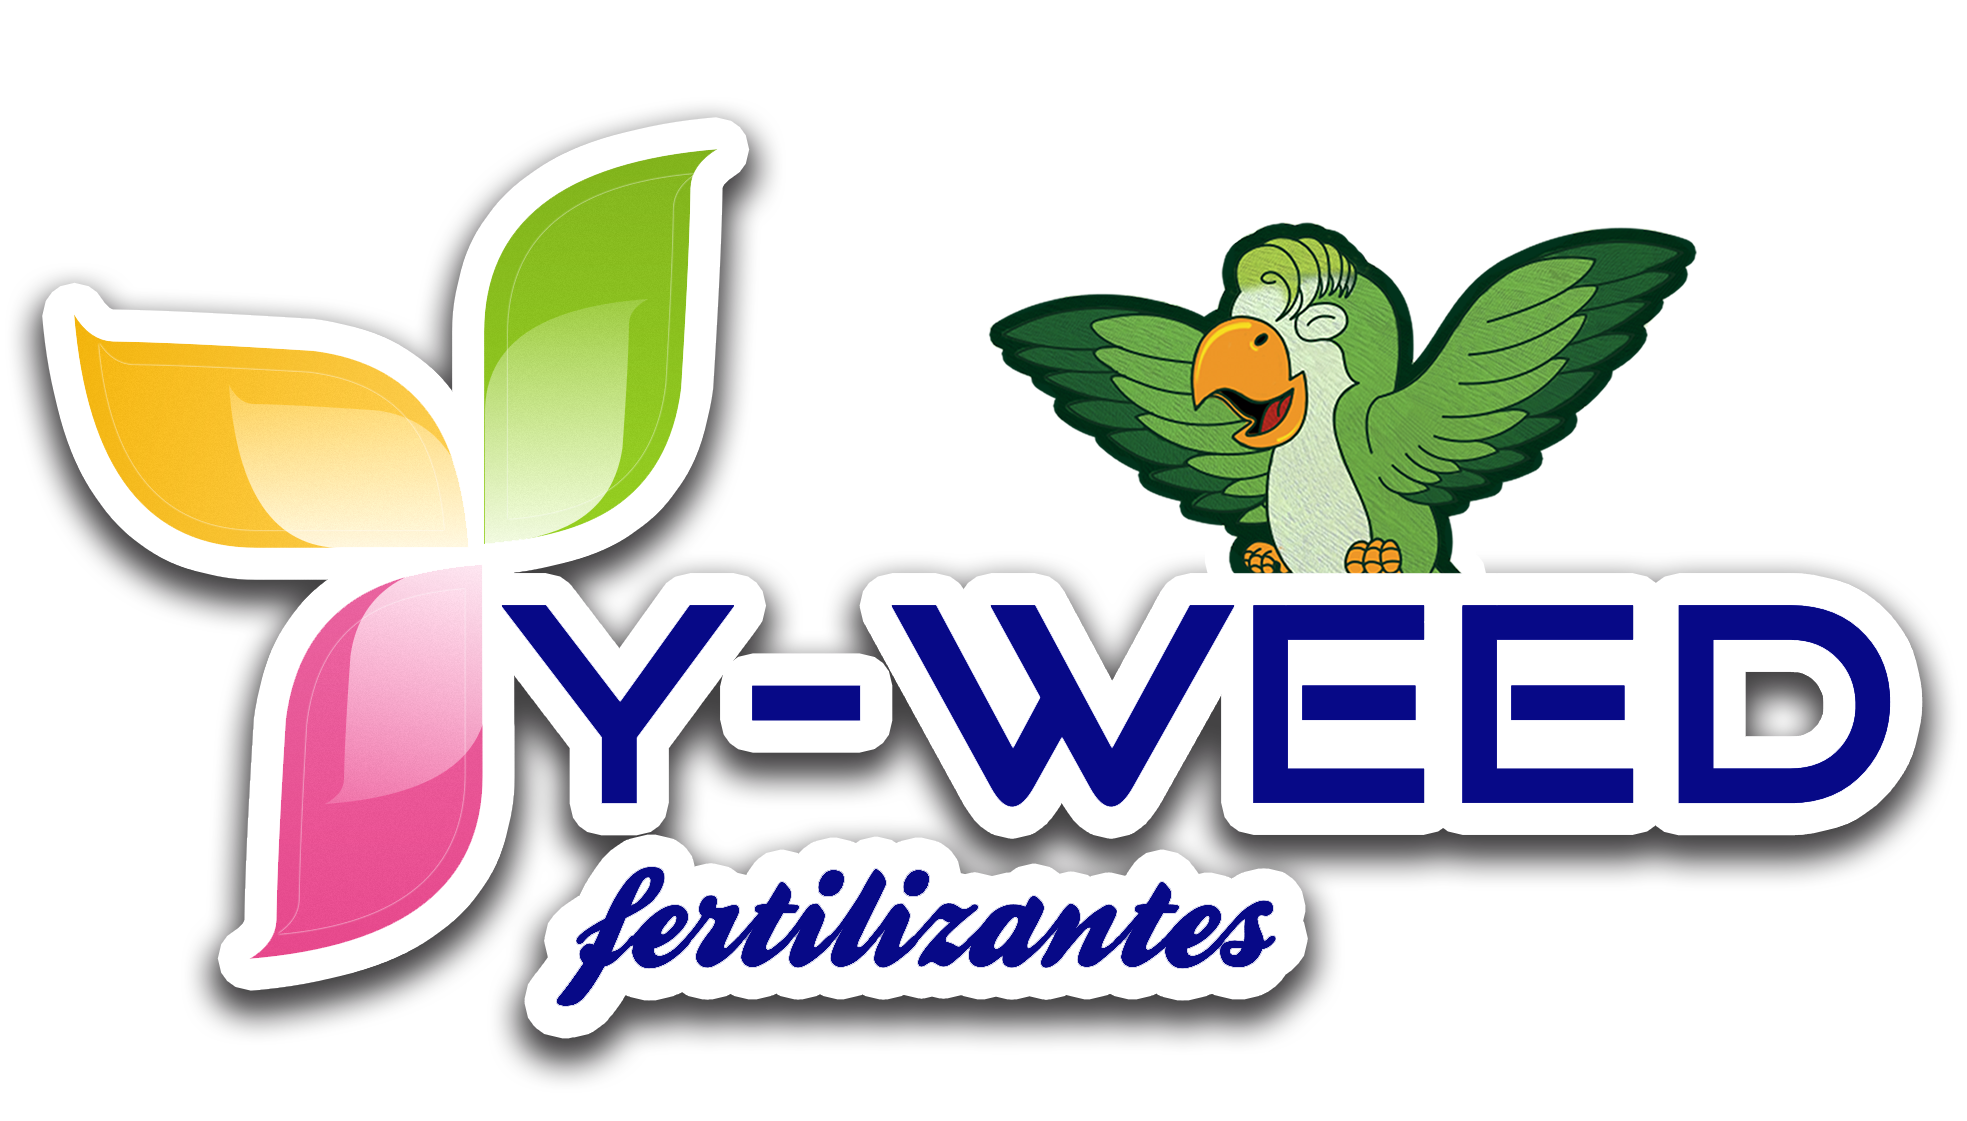 Y-Weed Fertilizantes